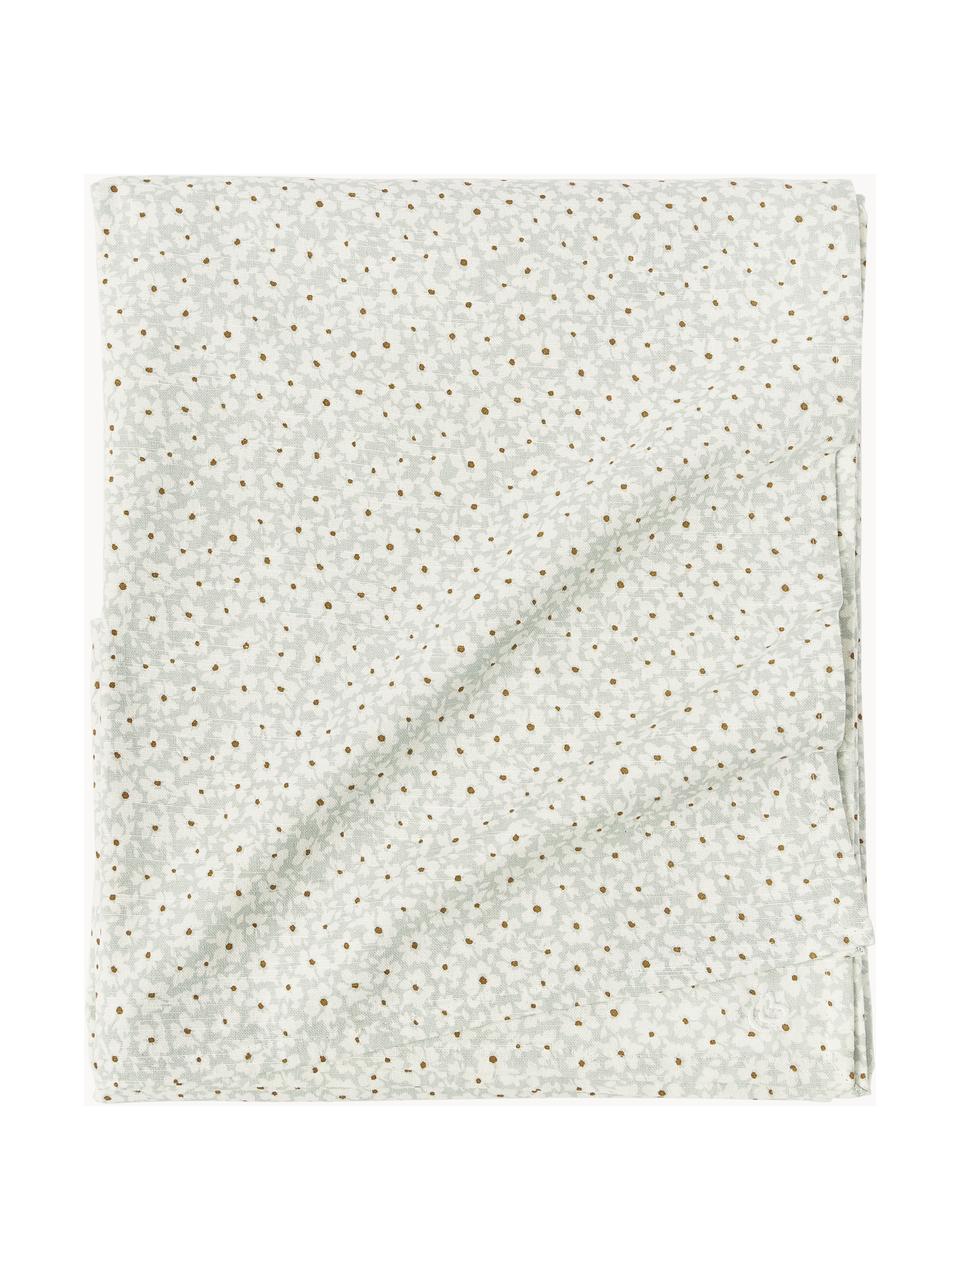 Tafelkleed Liberte met bloemmotief, 100% katoen, Saliegroen, gebroken wit, bloemmotief, 6-8 personen (L 220 x B 140 cm)